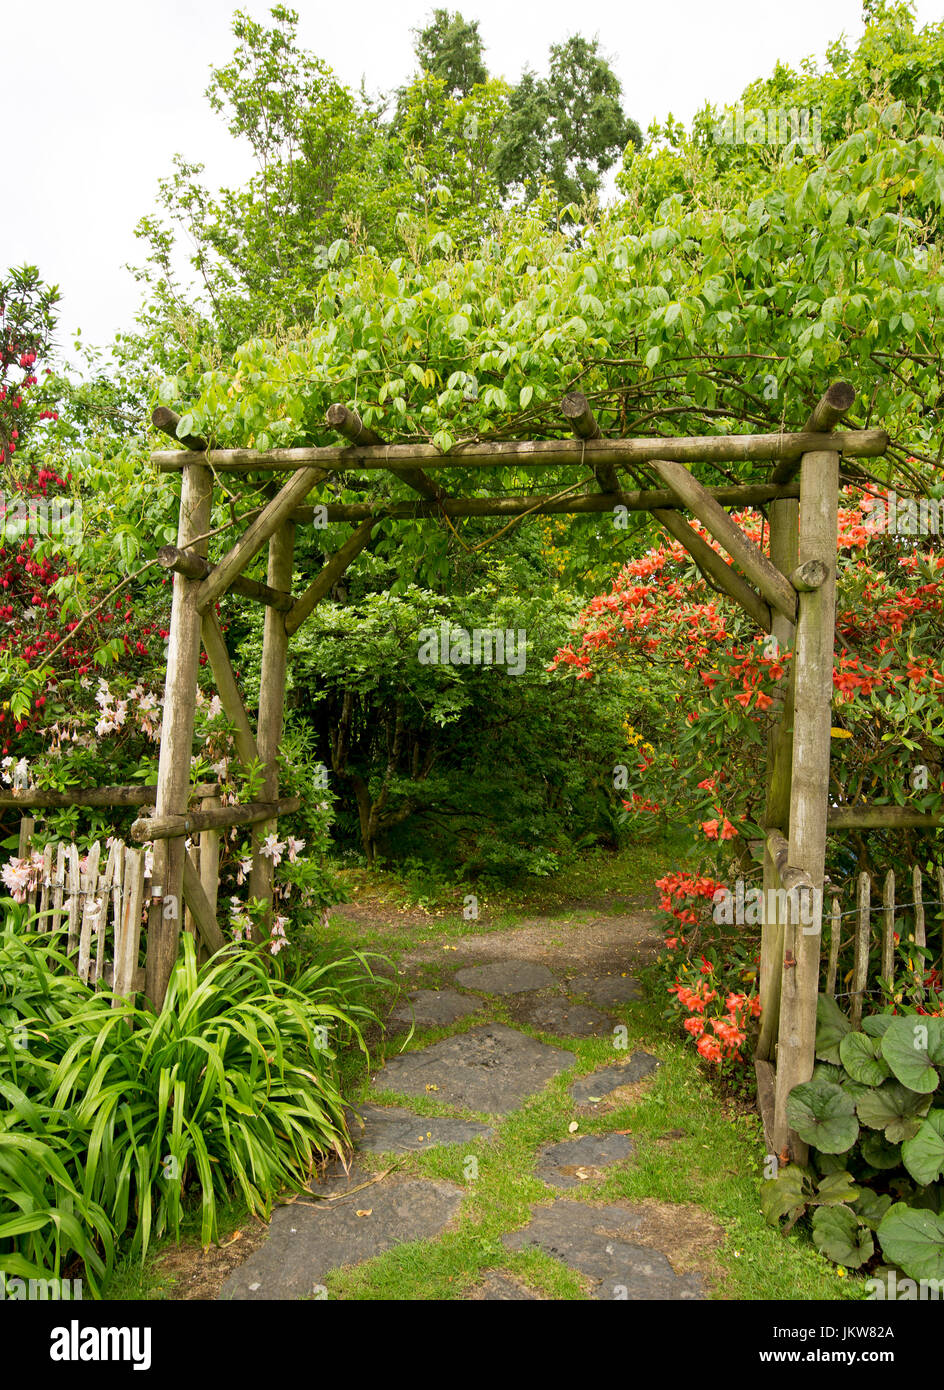 Arco in legno ingresso nel giardino inglese con alberi di arancio e fiorito  e rododendro denso fogliame di smeraldo Foto stock - Alamy